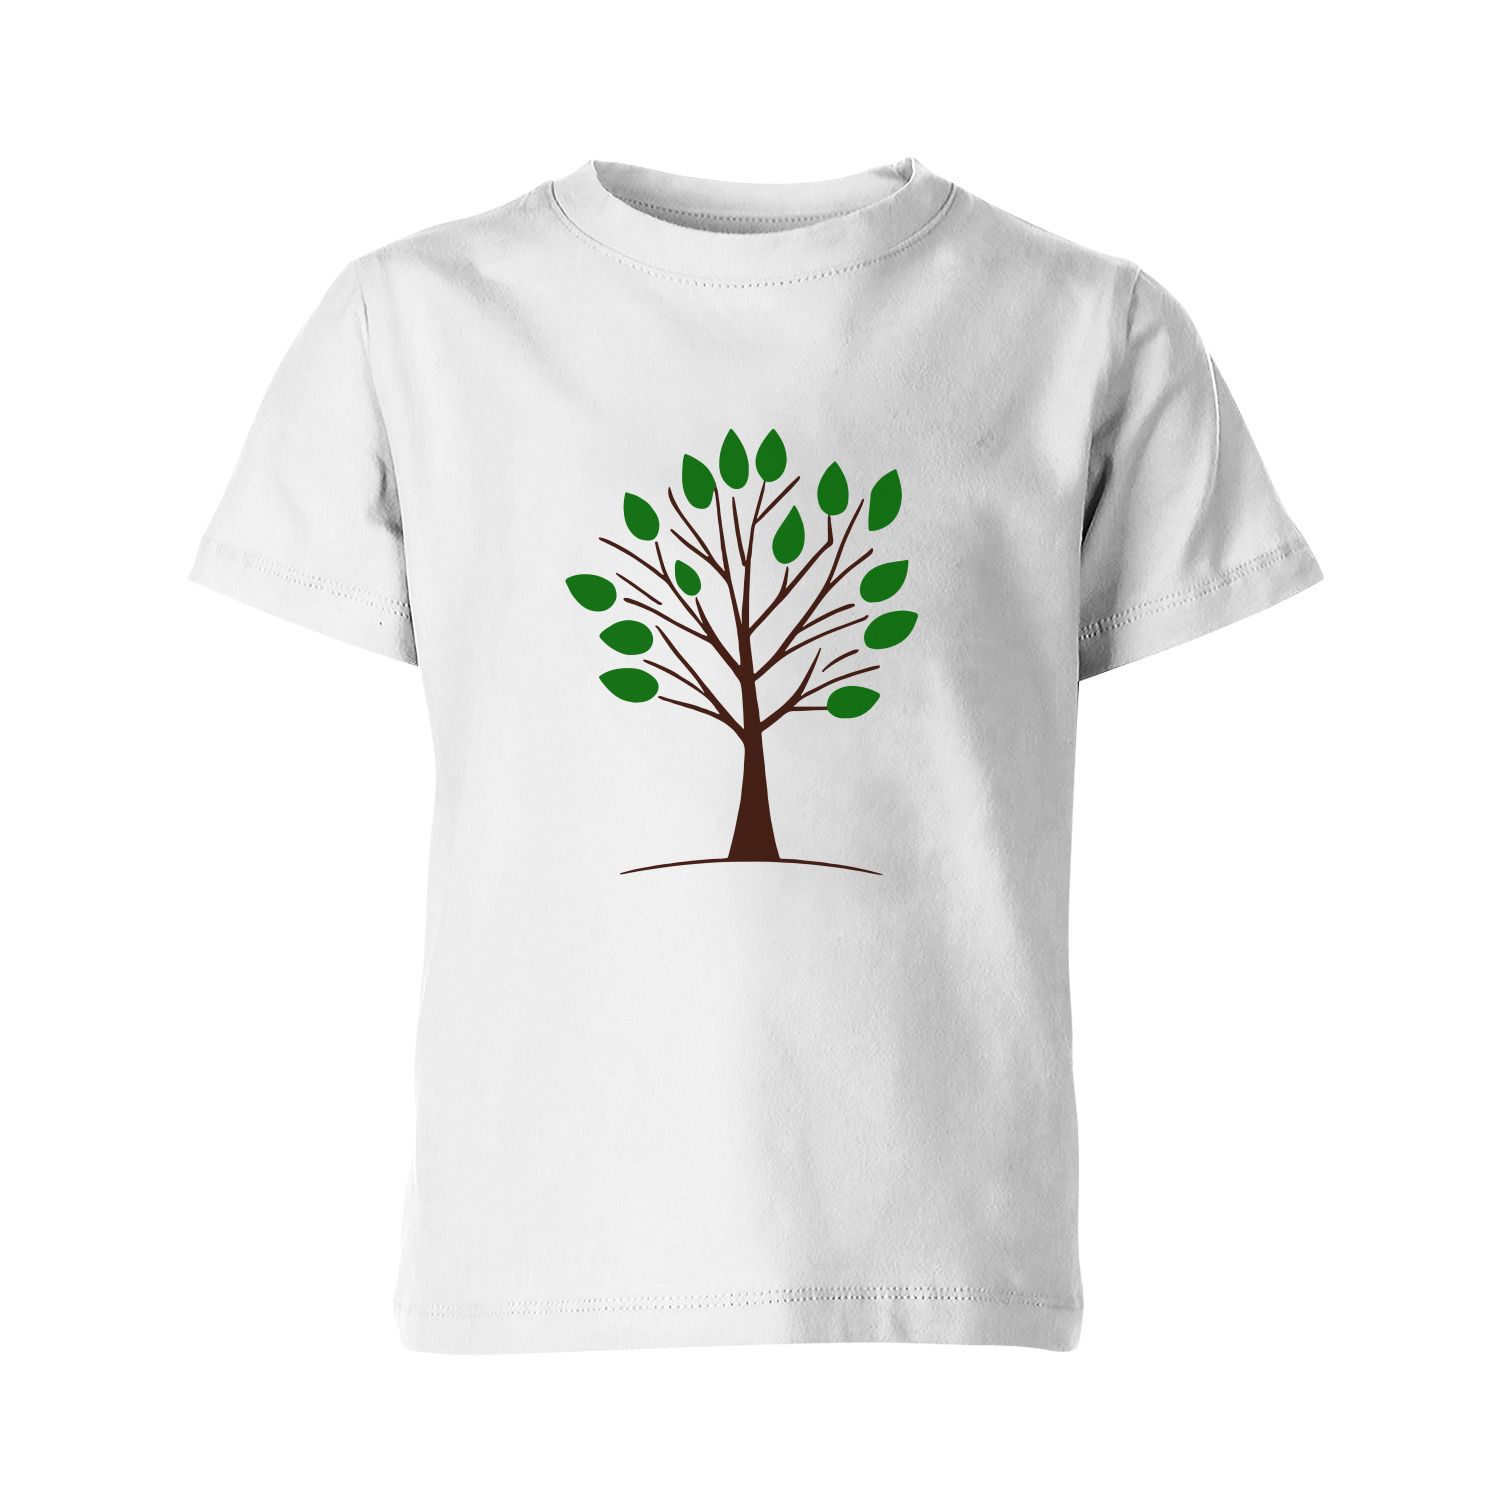 Дерево майка. Футболка дерево. Рисунок на футболке дерево. Ассоциация с деревом на футболке. The Tree футболки одежда.